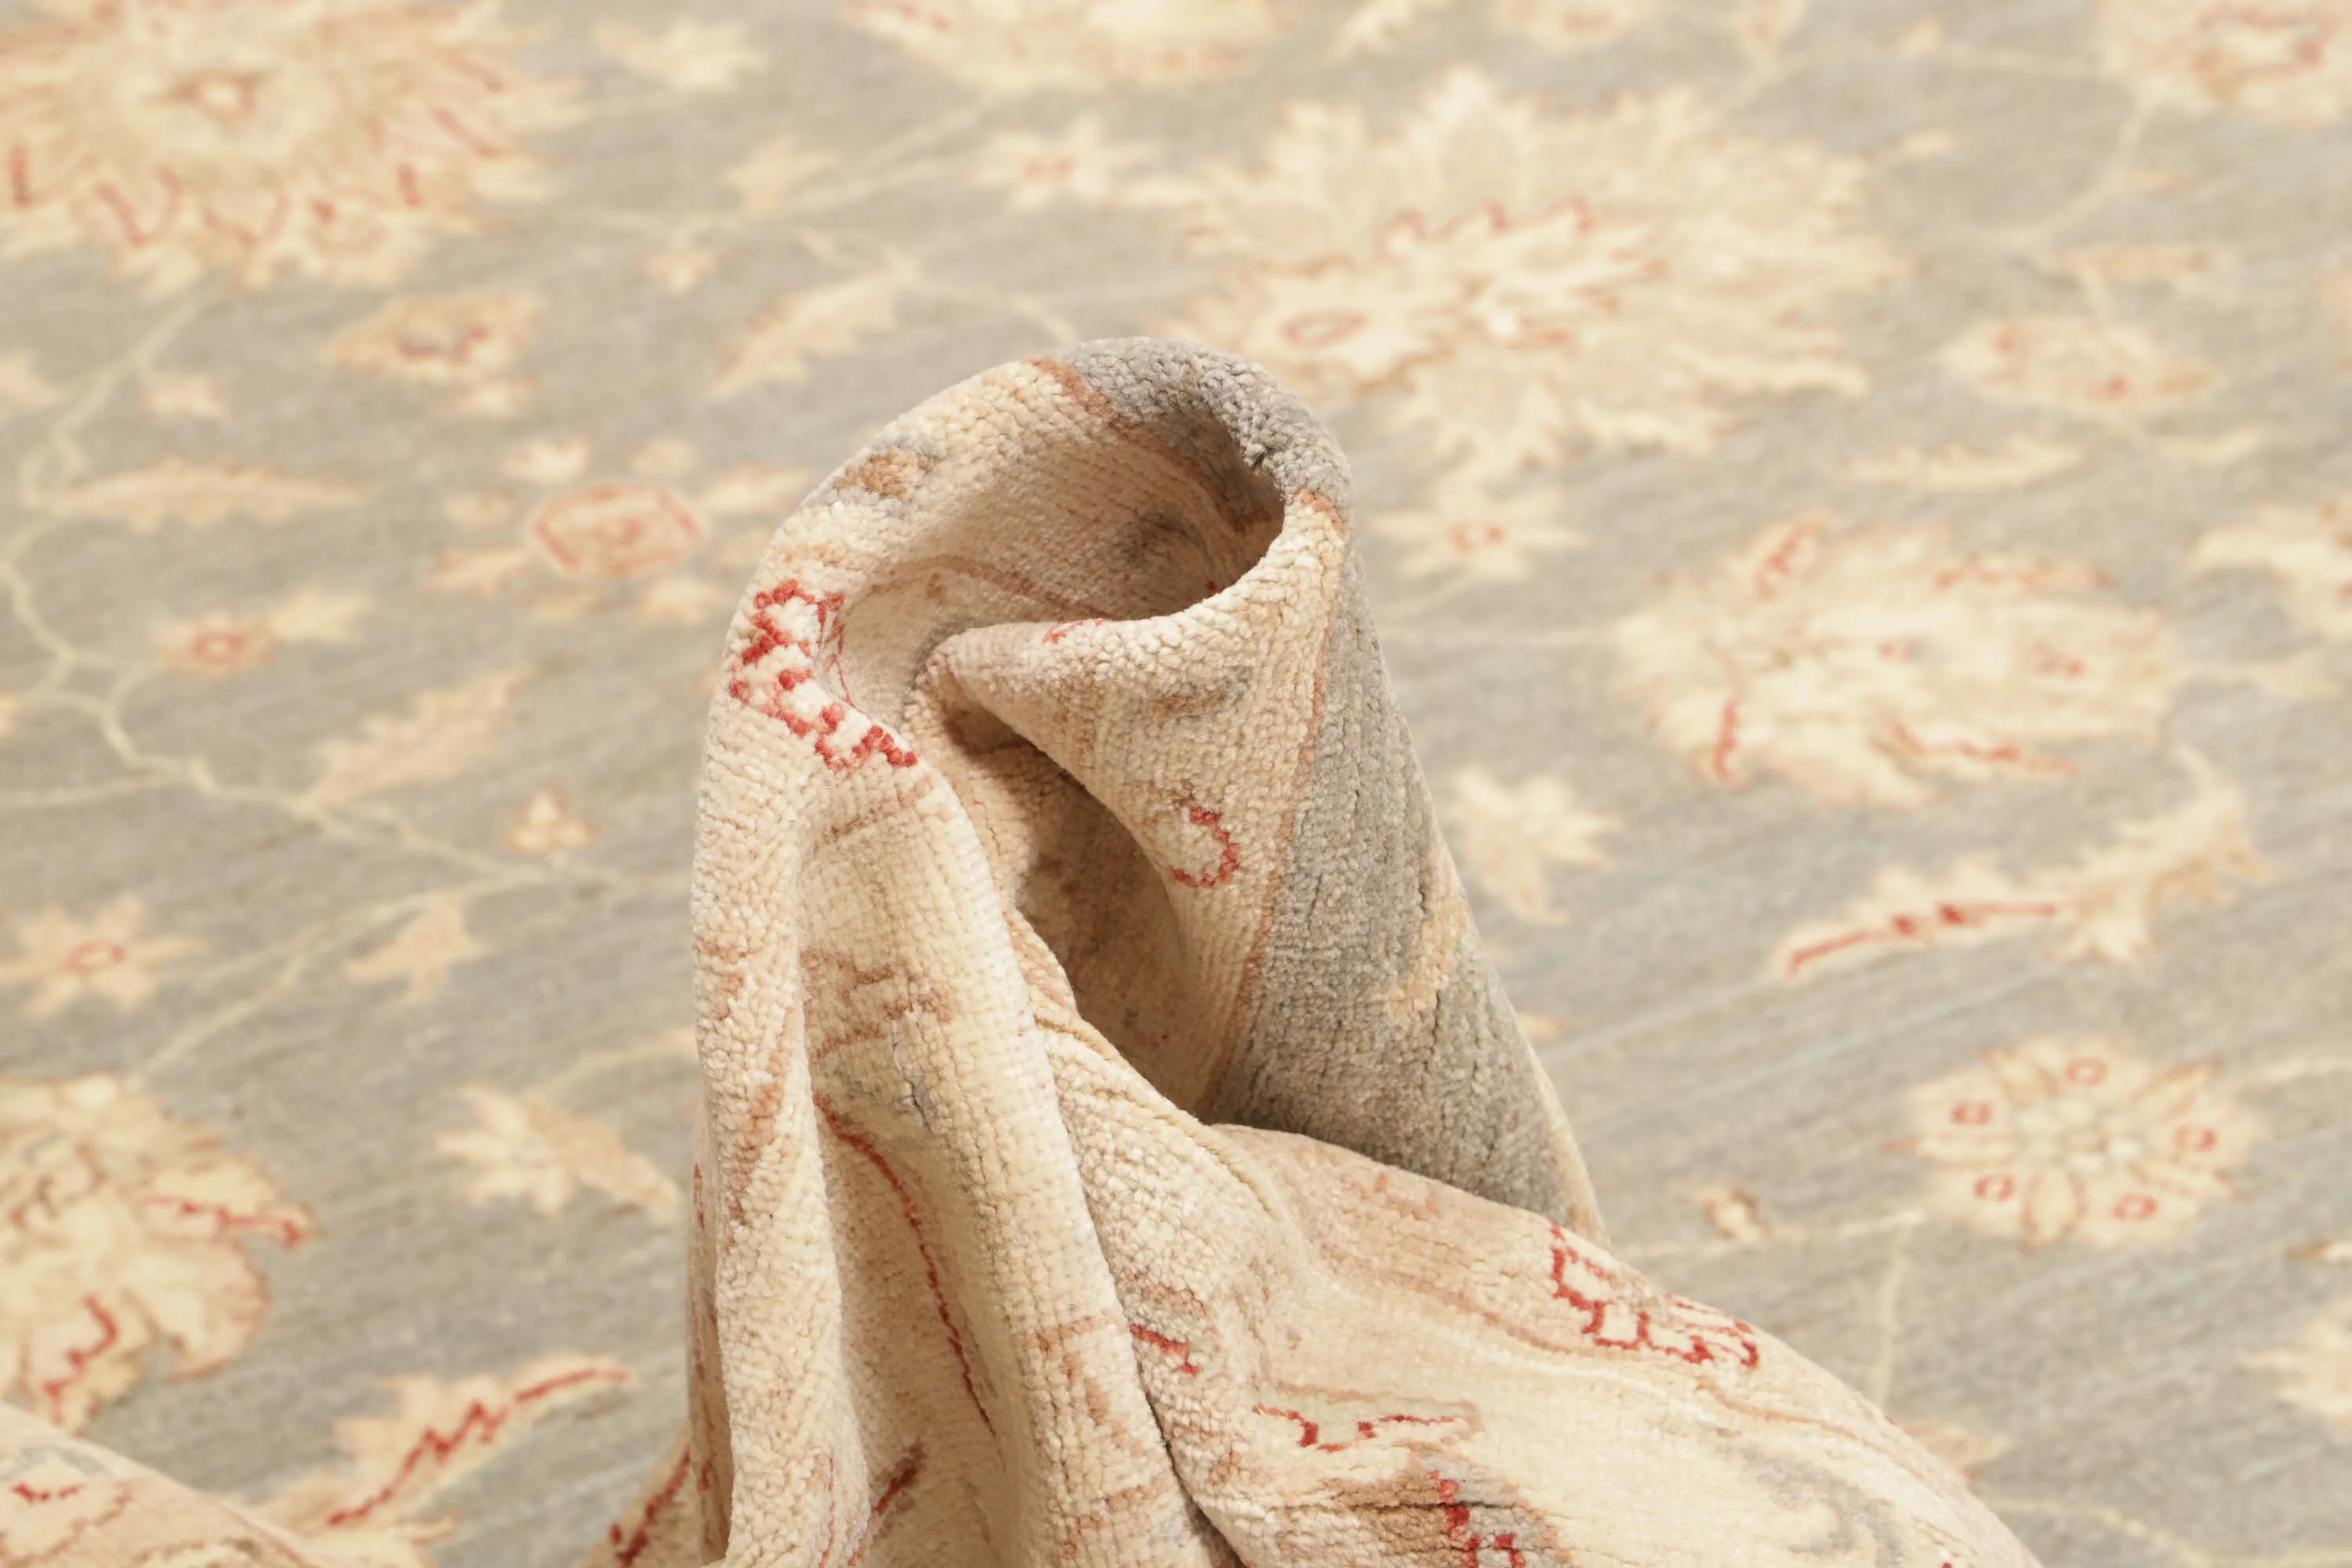 Teppich Ziegler 307 x 420 cm Orientteppich beige Handgeknüpft Schurwolle